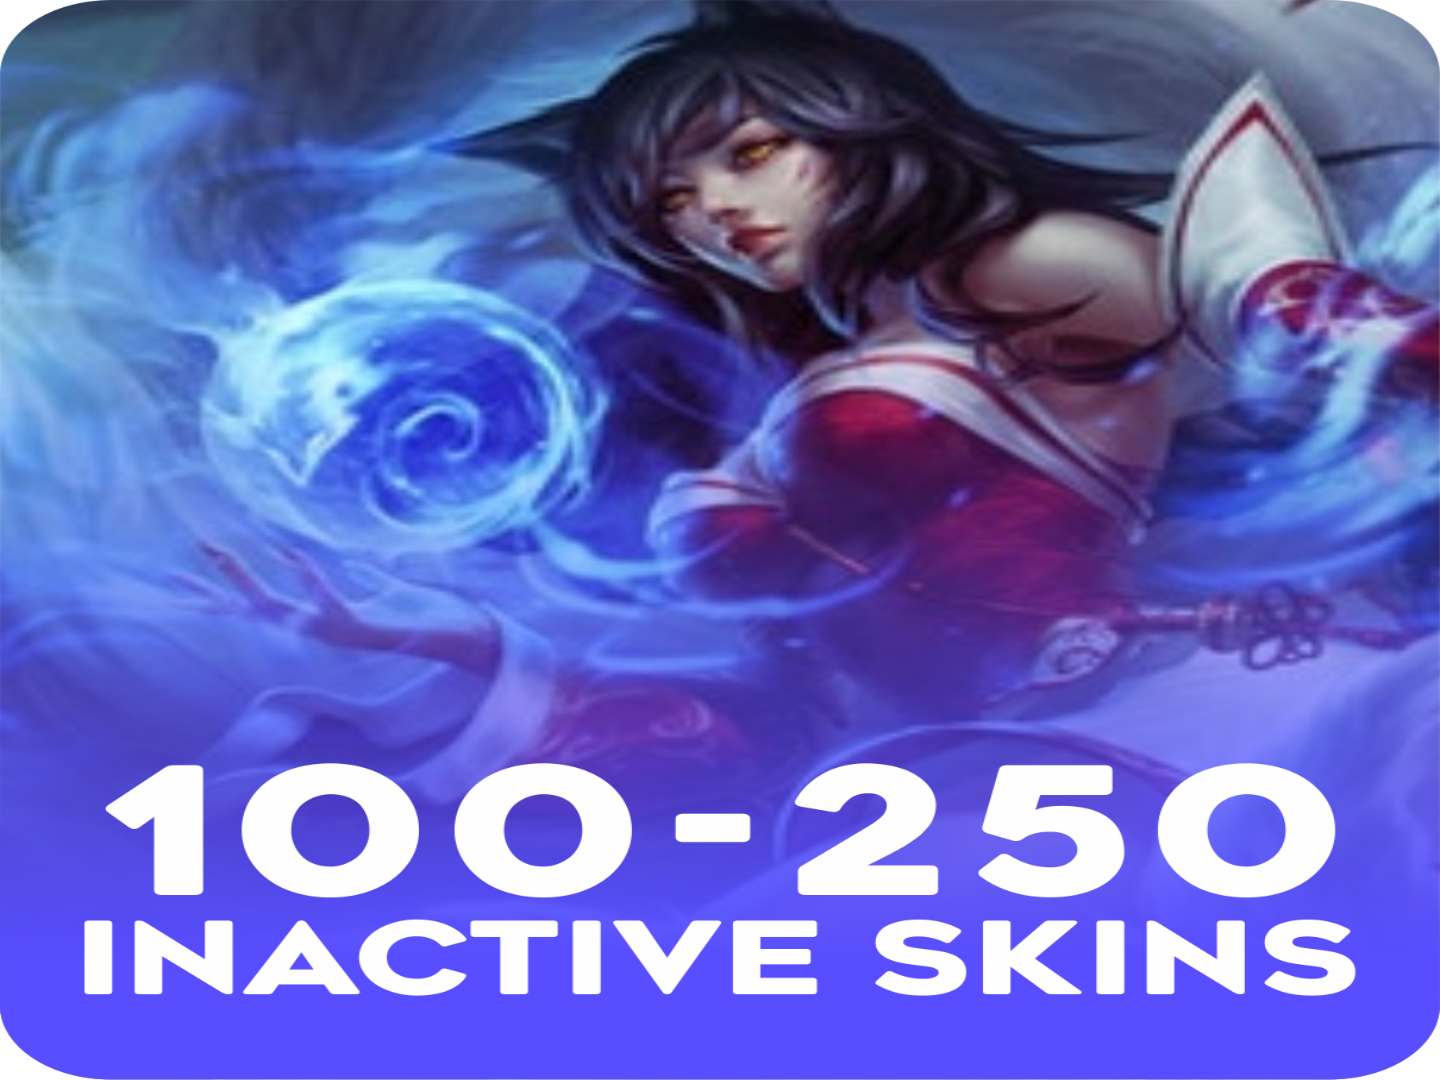 Inactive 100-250 skins Account